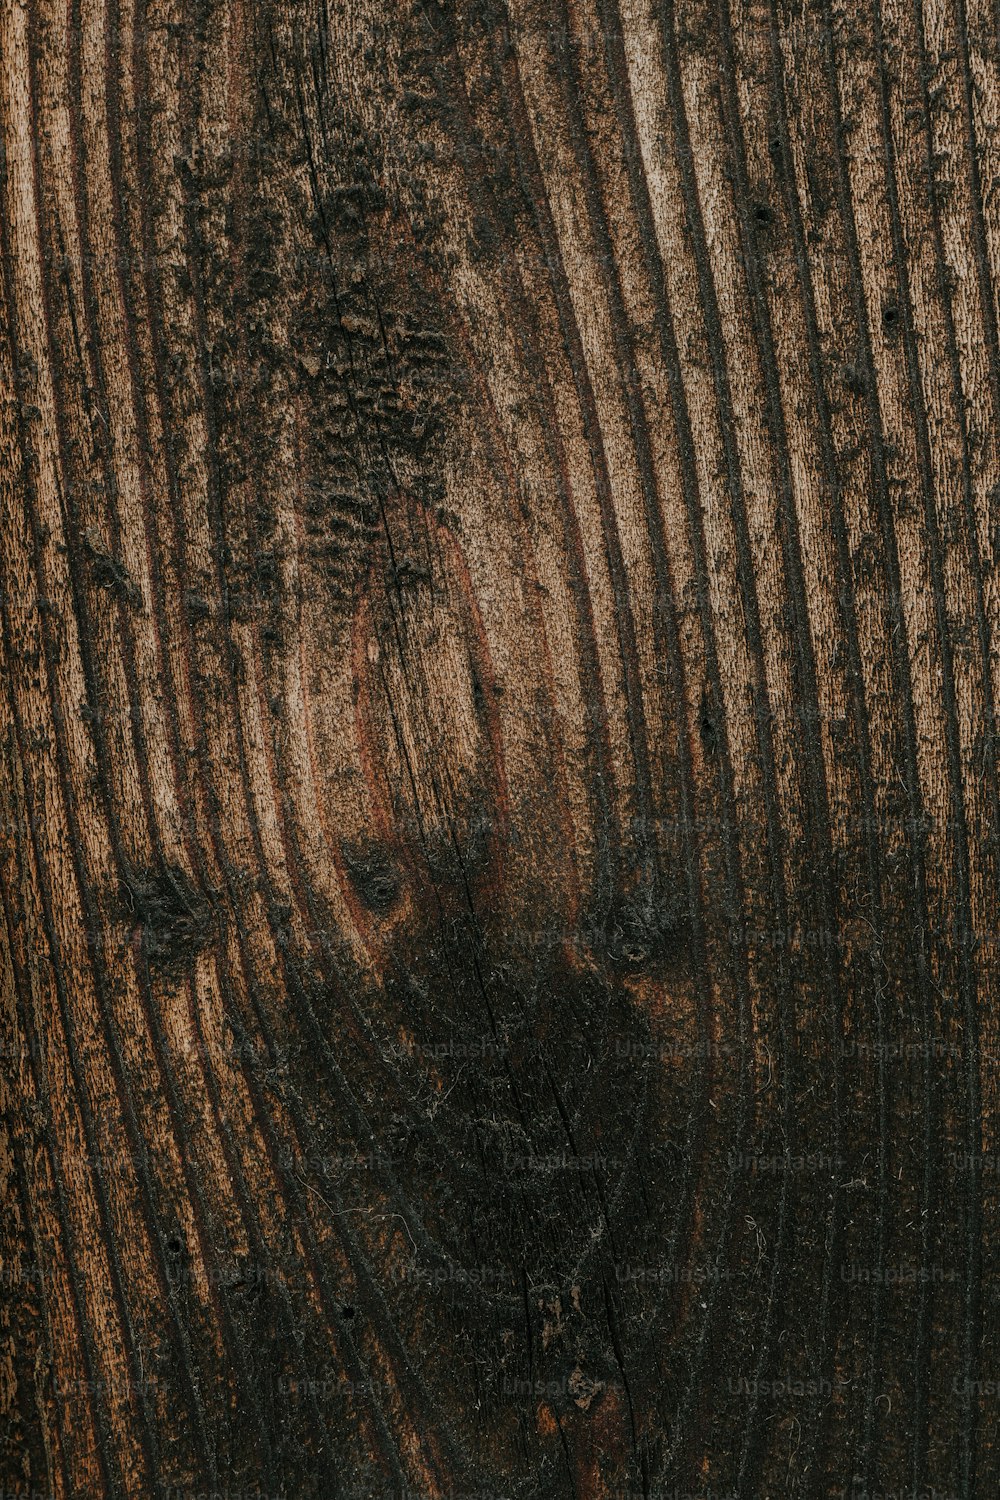 Un primer plano del tronco de un árbol que muestra la corteza